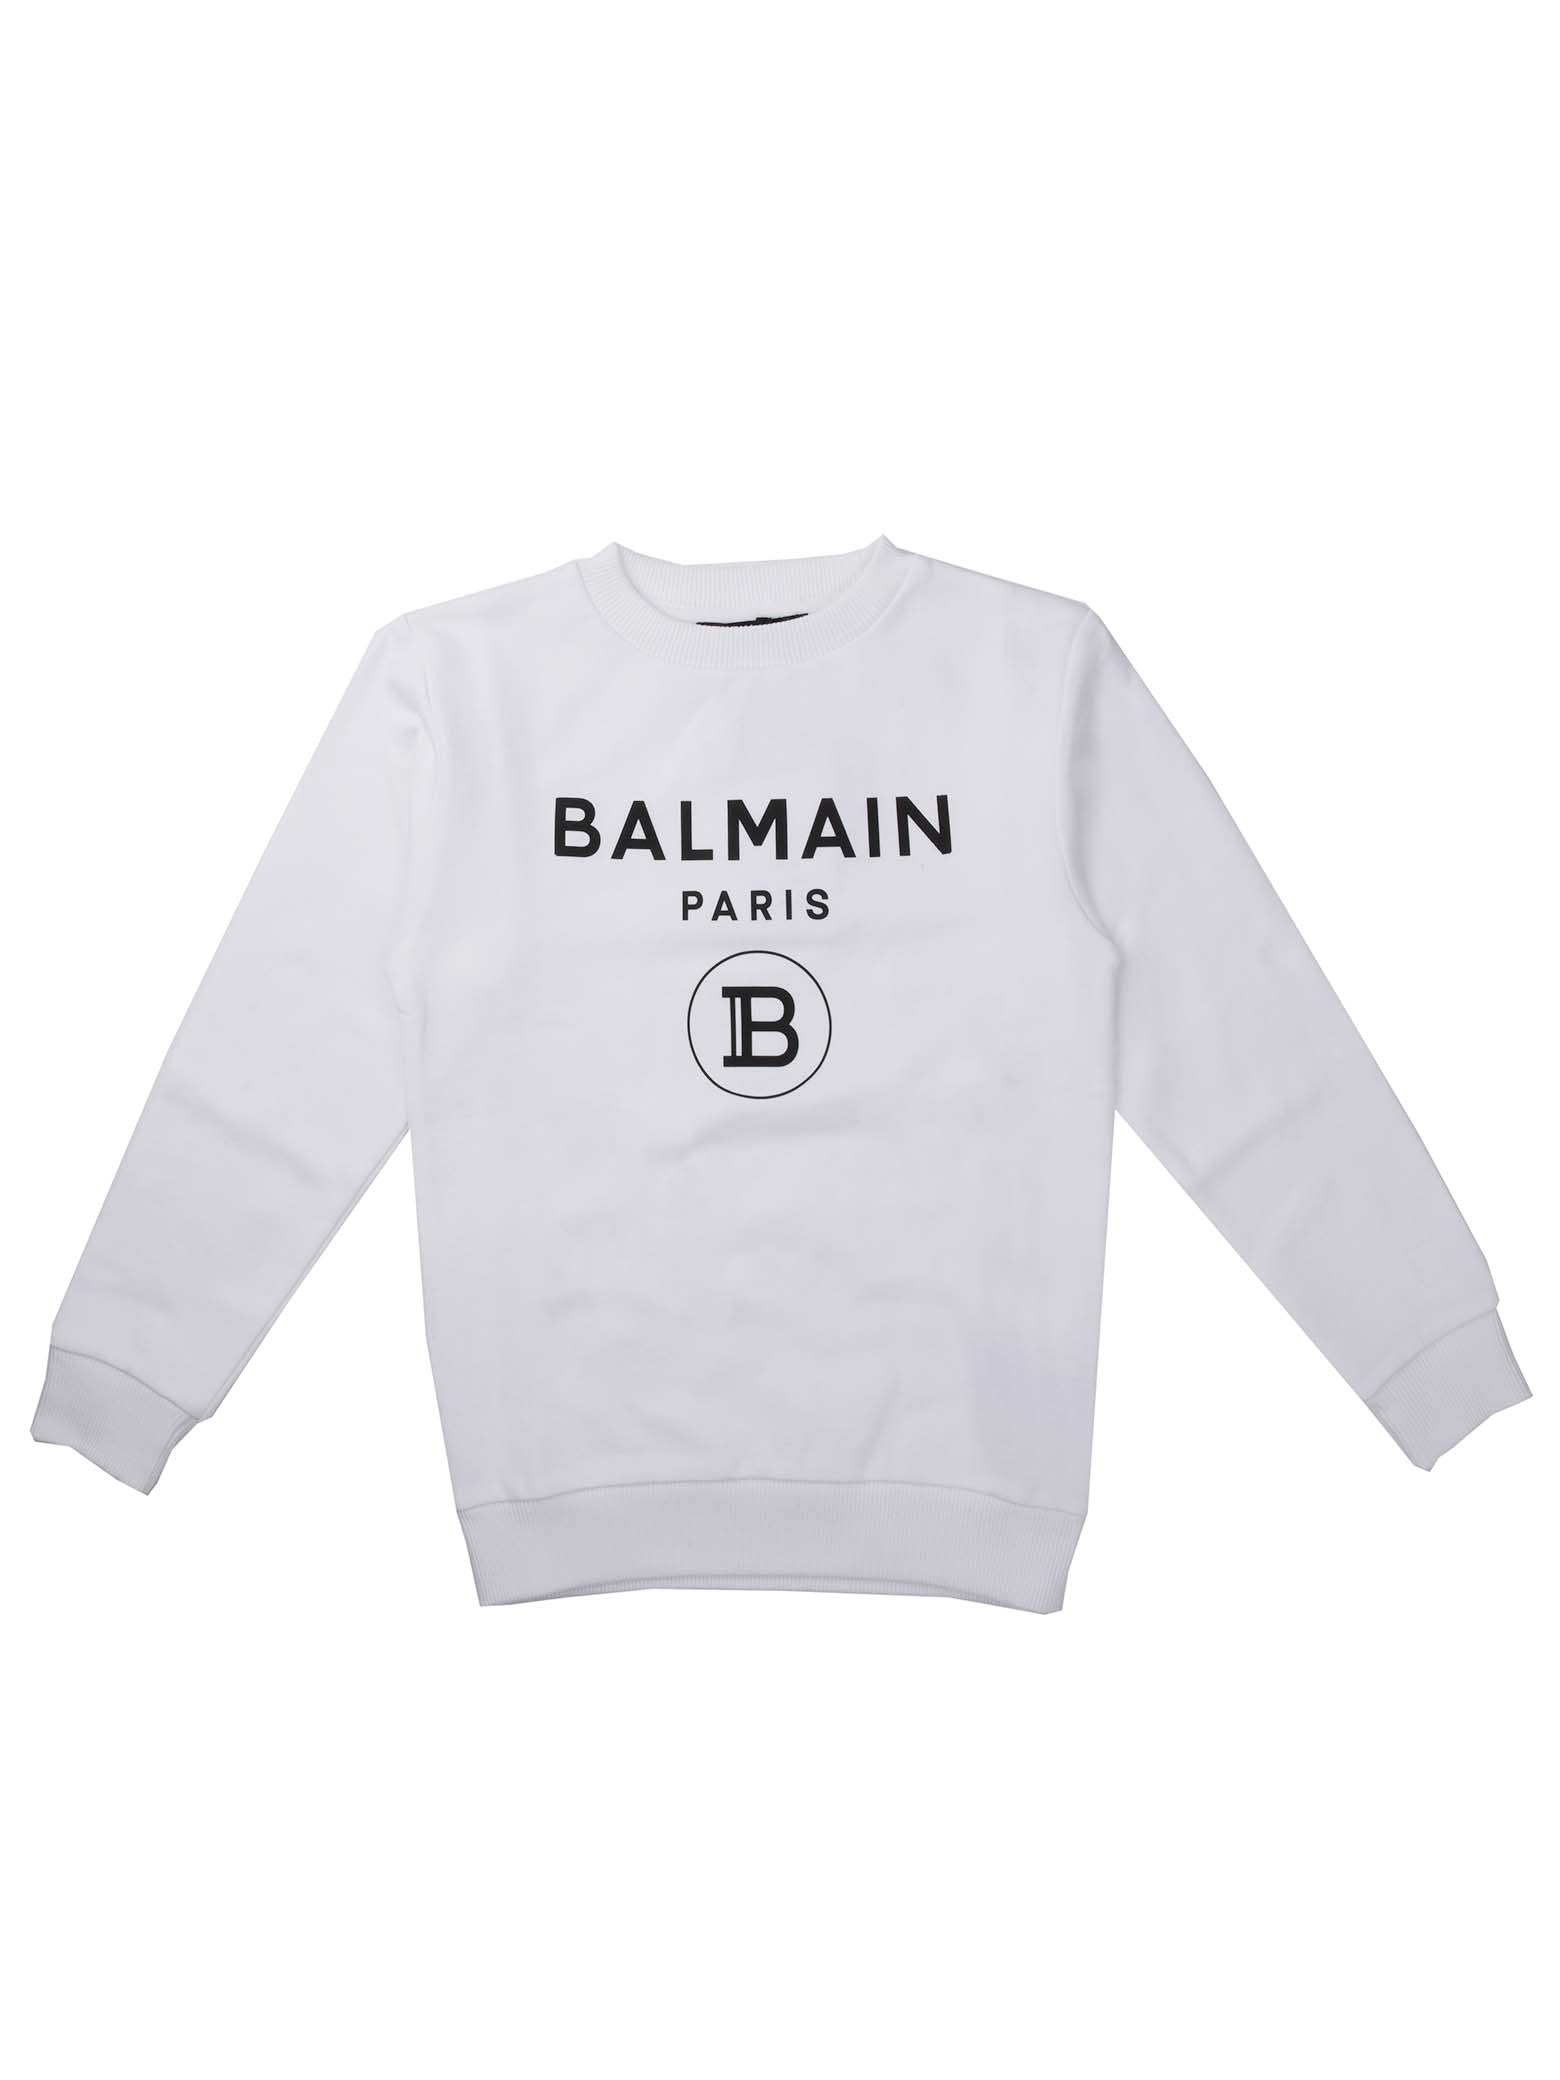 Balmain White Round Neck Sweatshirt